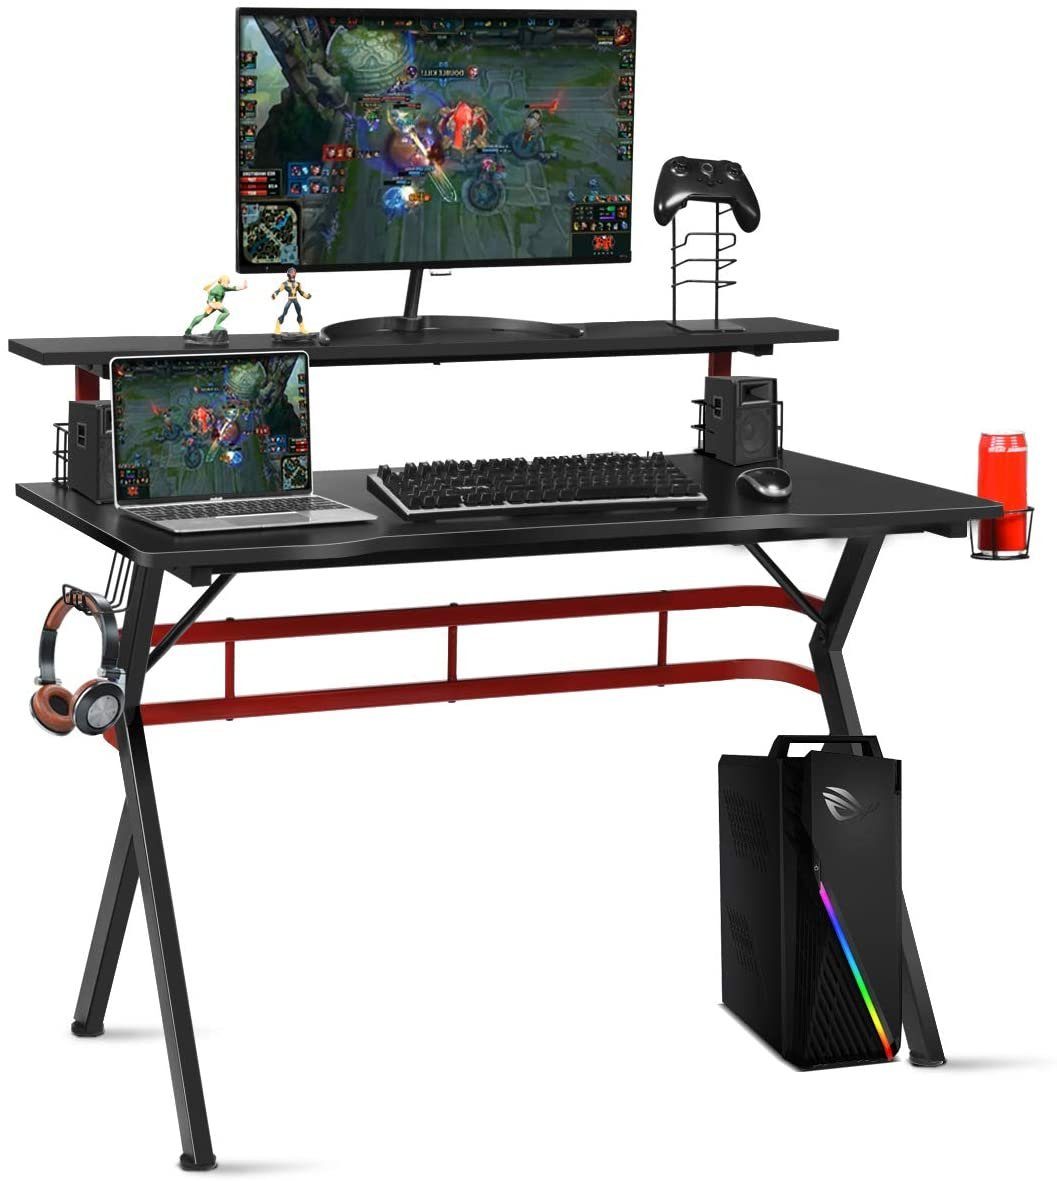 COSTWAY Gamingtisch, 120cm mit Monitorständer, 2 Boxen-Ständern, Haken schwarz+rot